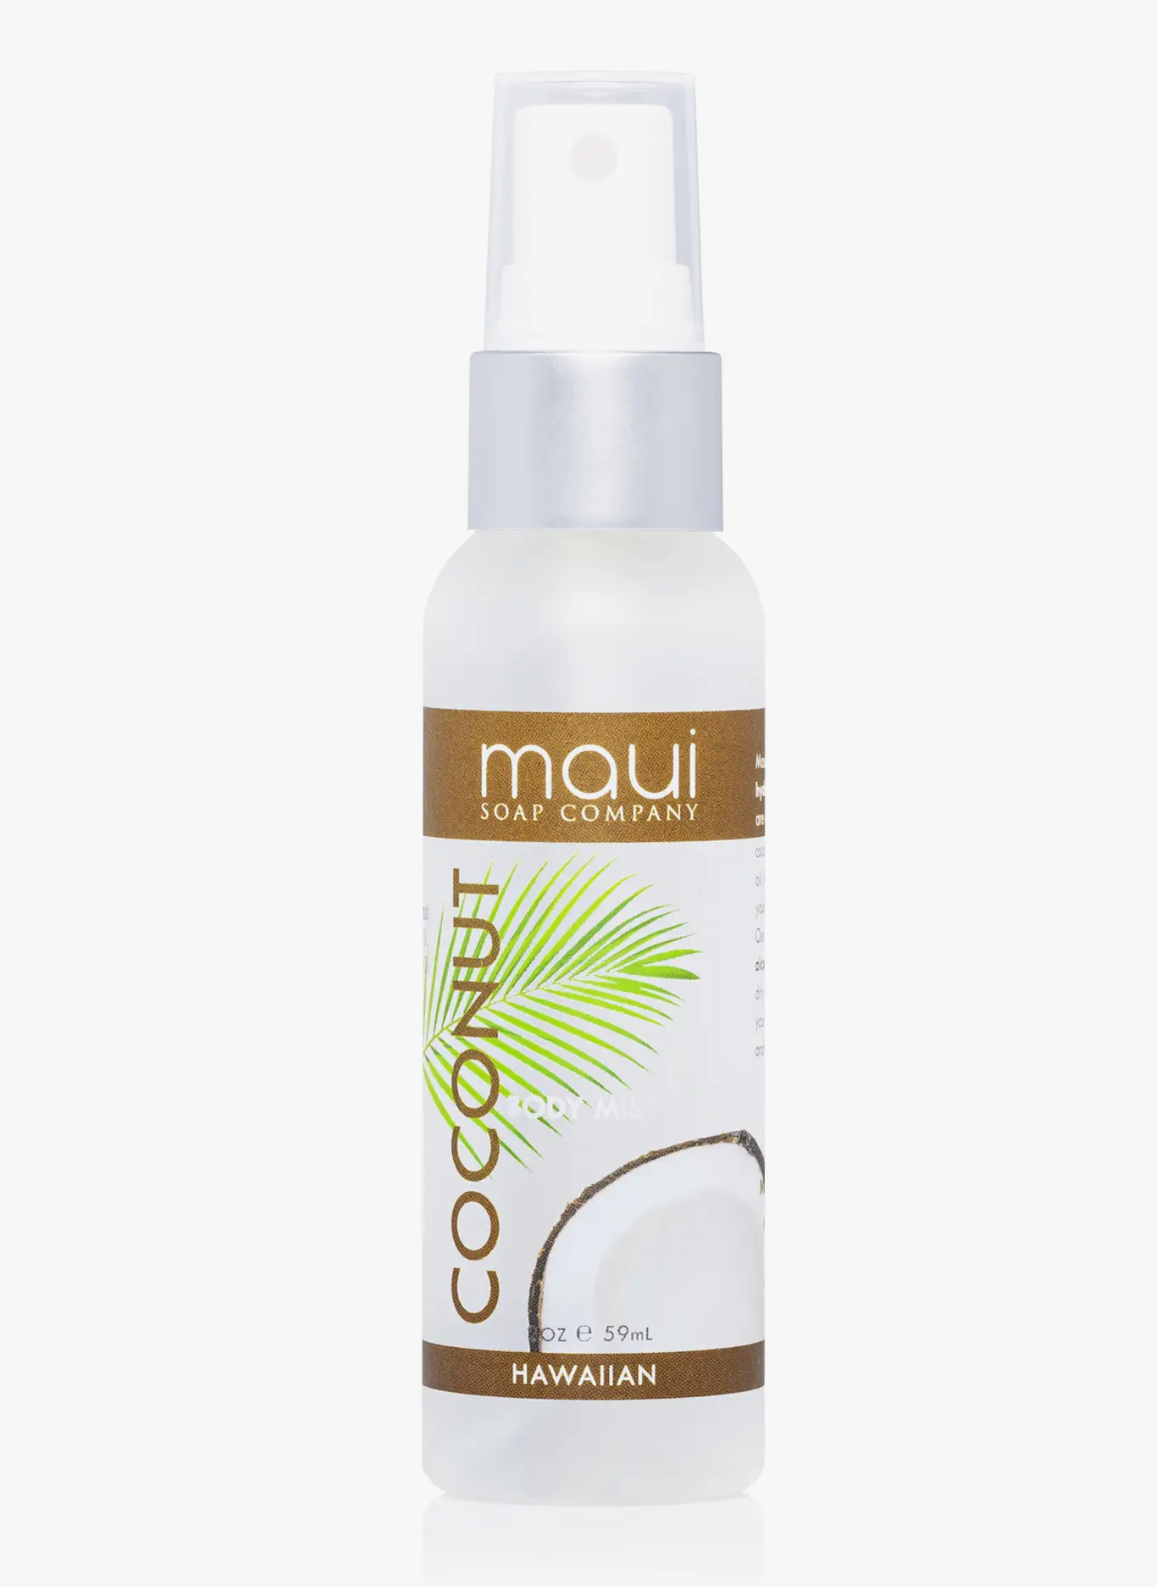 Maui Soap Company Body Mist - Coconut